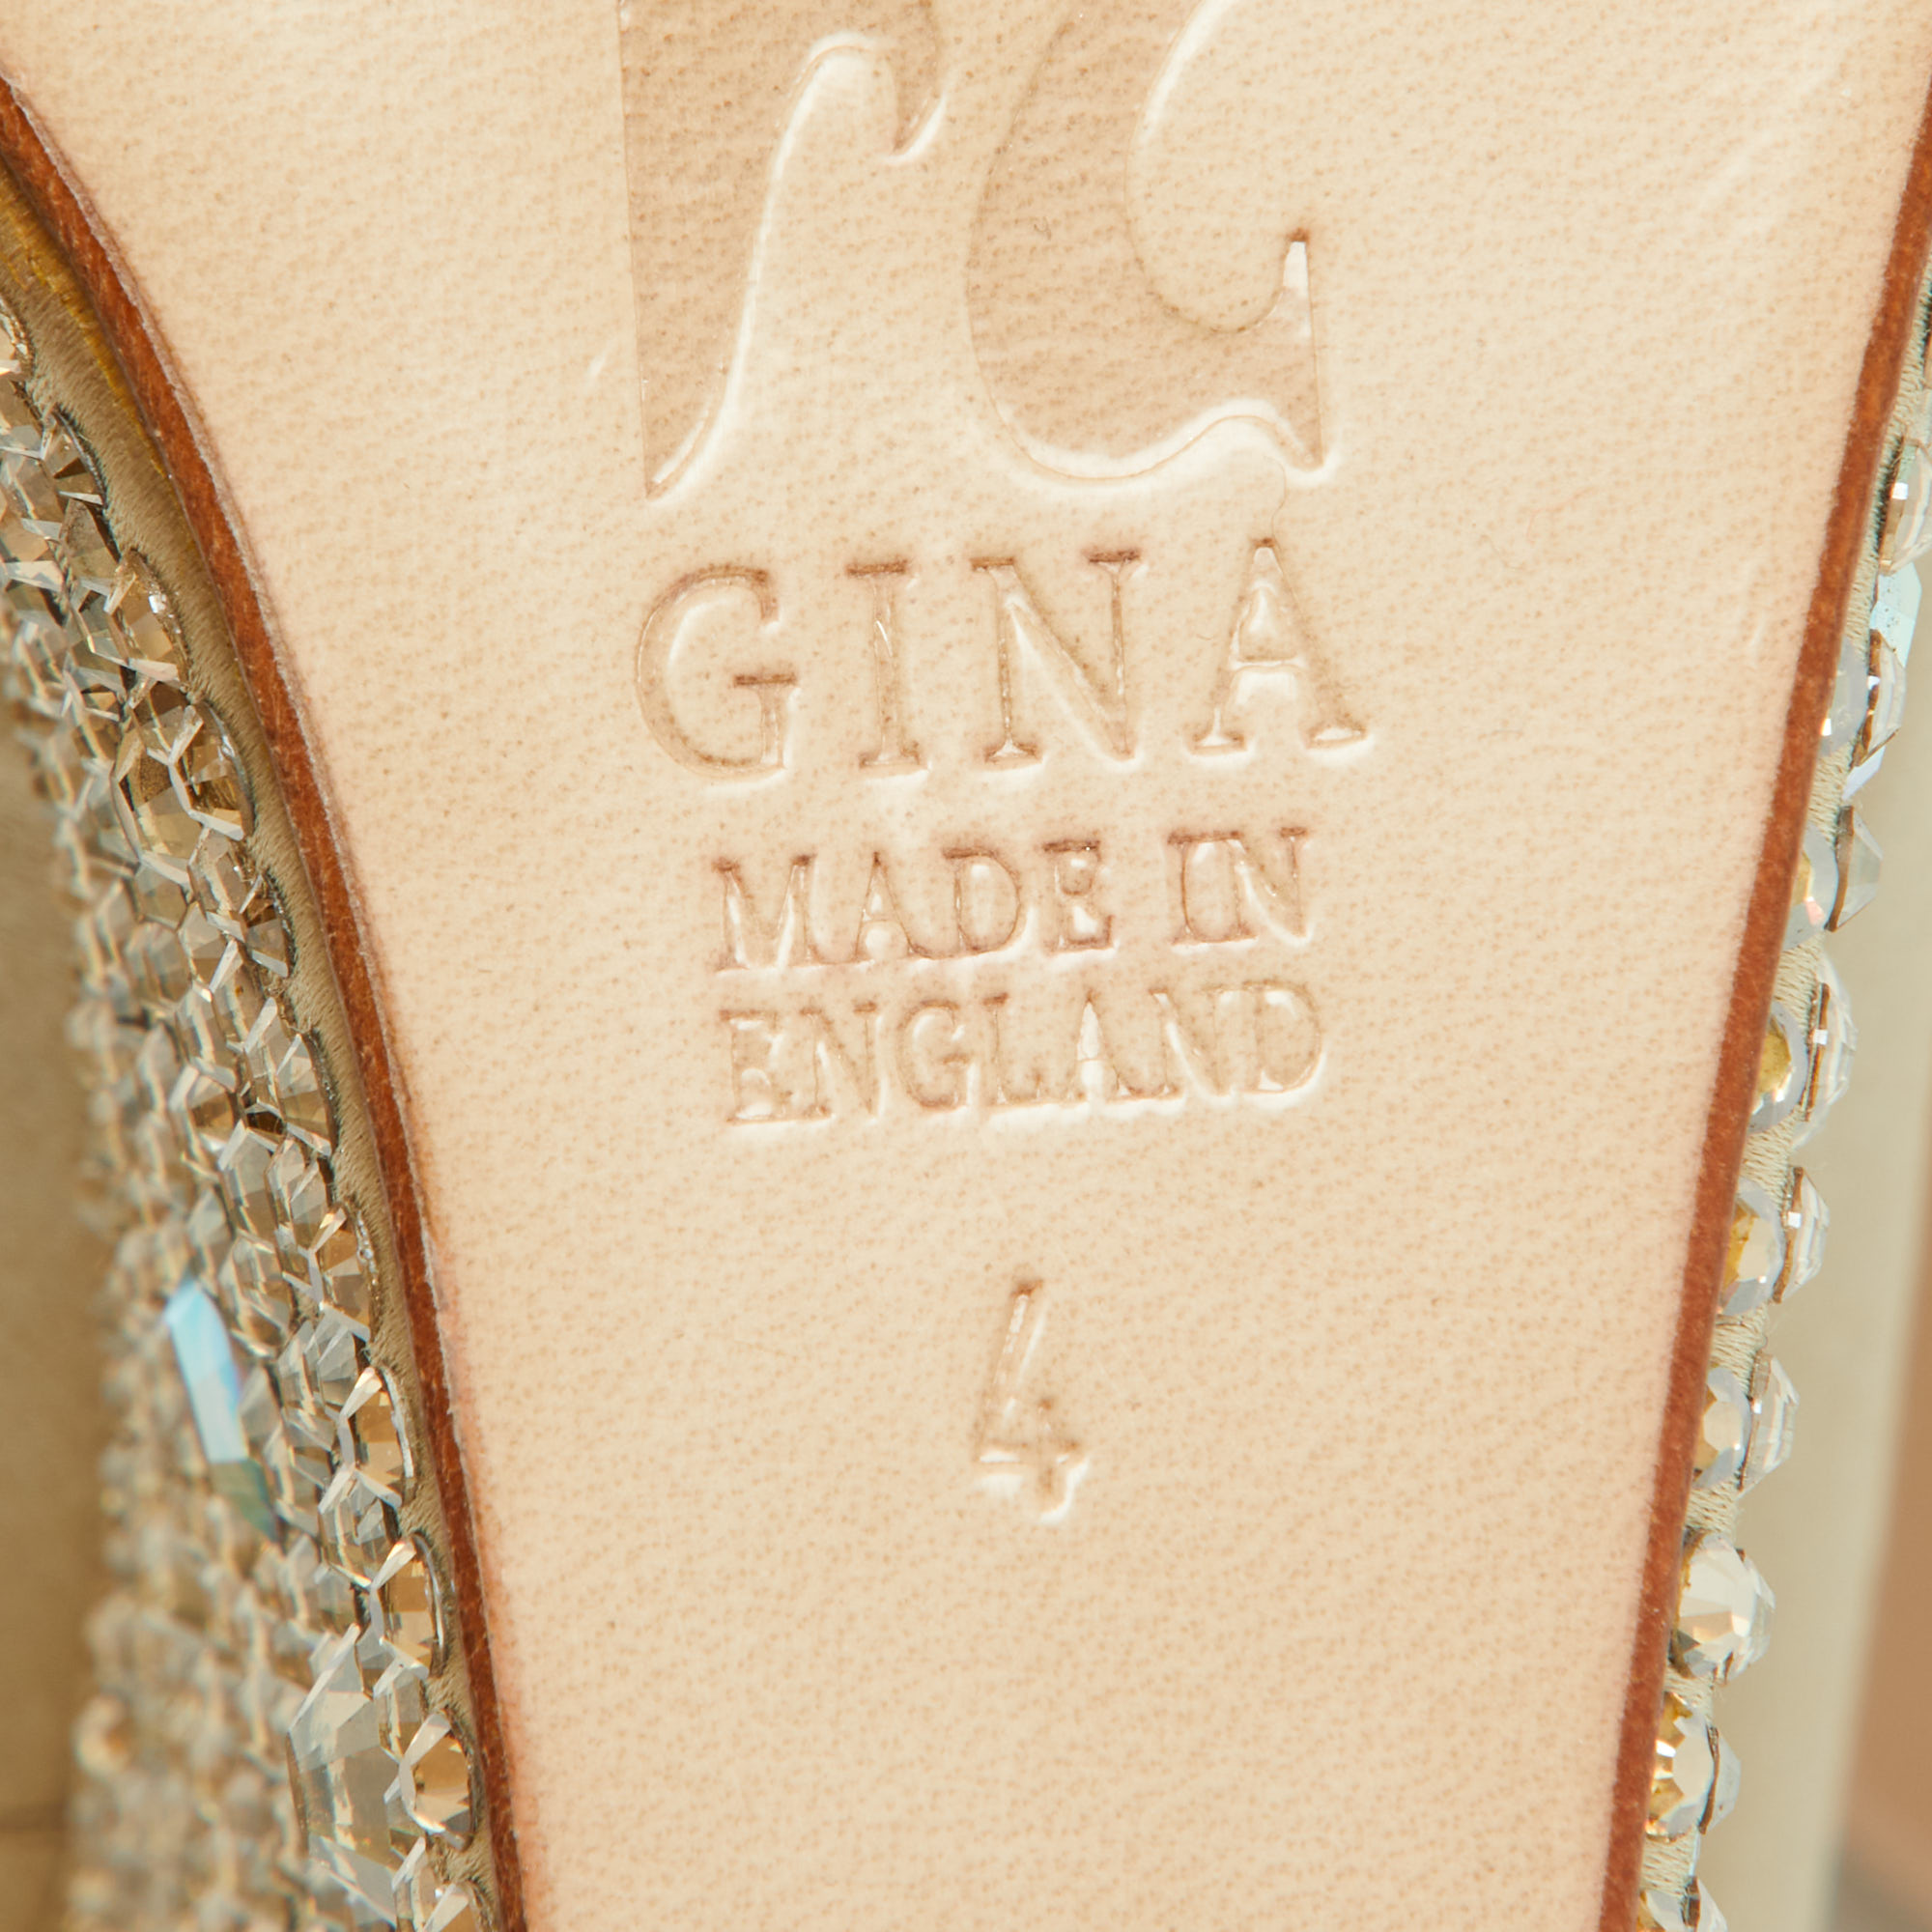 Gina Beige Crystal Embellished Satin Belle Open Toe Wedge Pumps Size 37